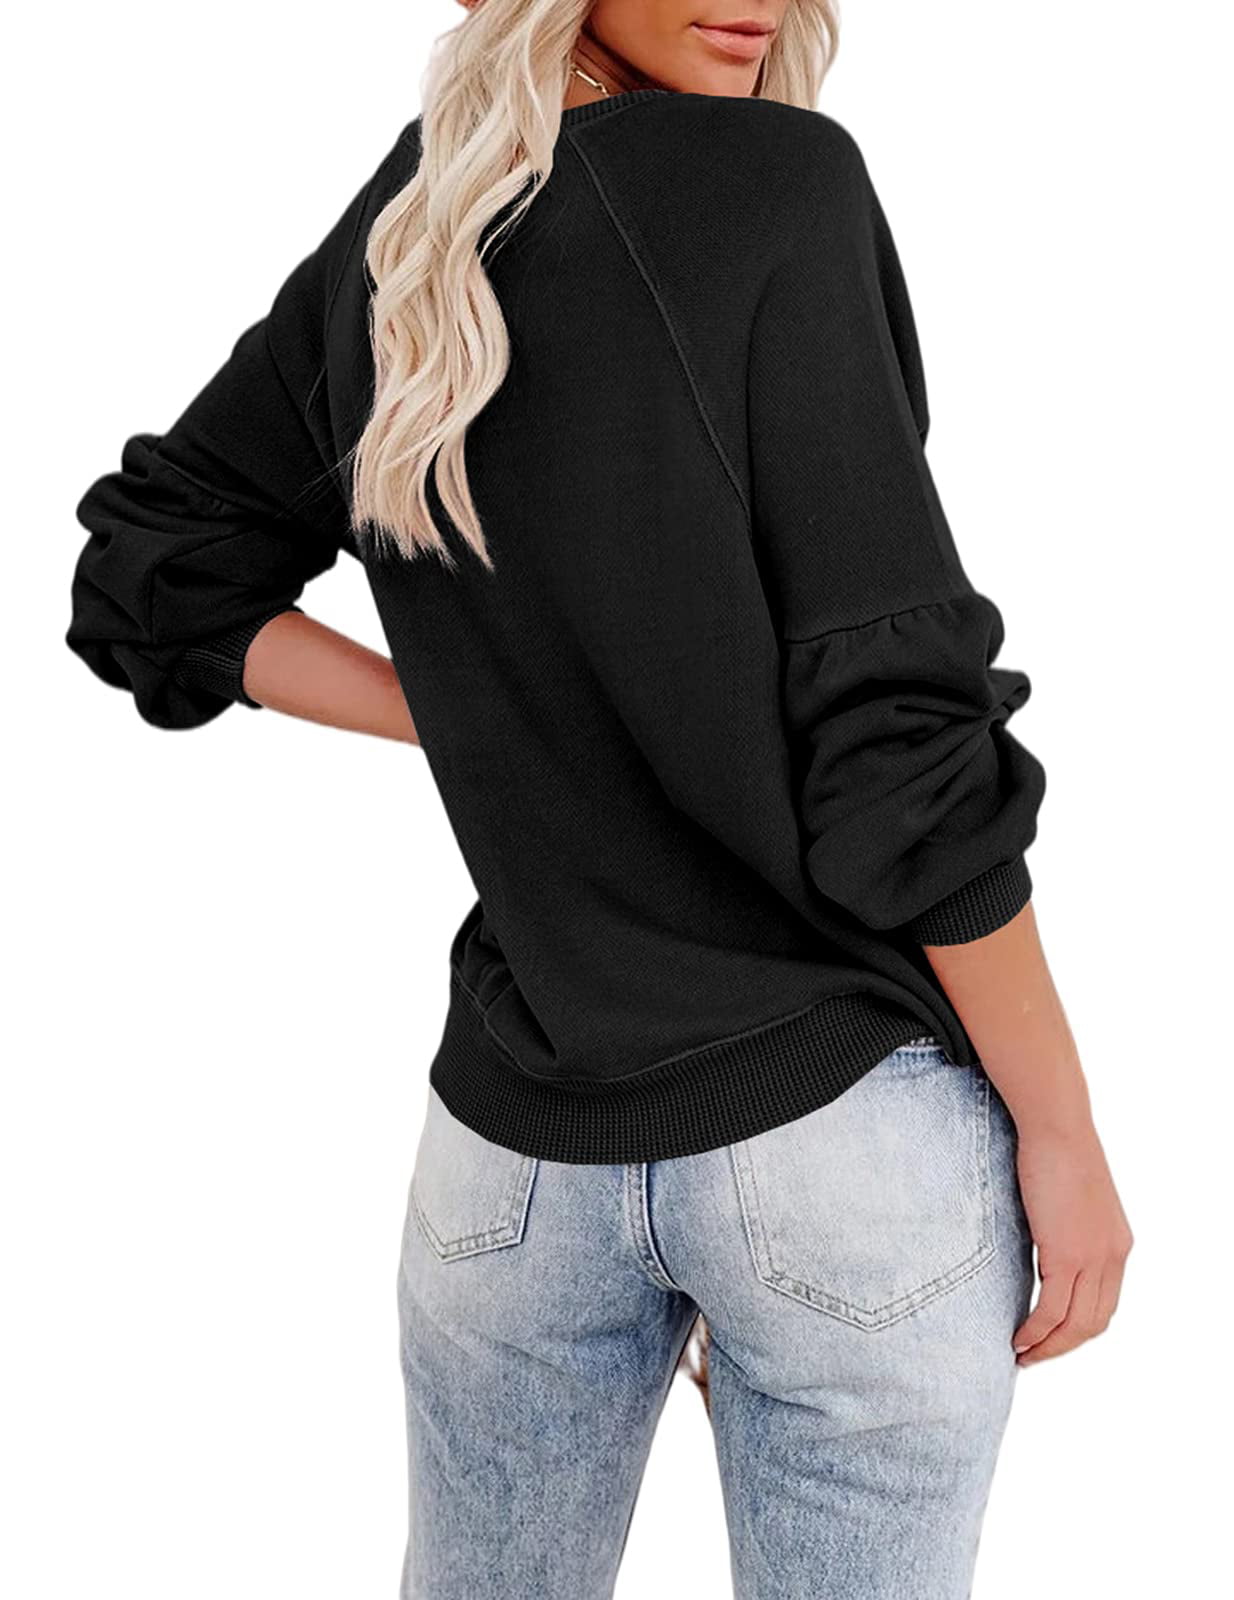 Plnotme Womens Los California Angeles Pullovers Loose Drop Casual Letter Round Sleeve Neck Solid Hoodies Shoulder Sweatshirt Sweatshirt Printed Long